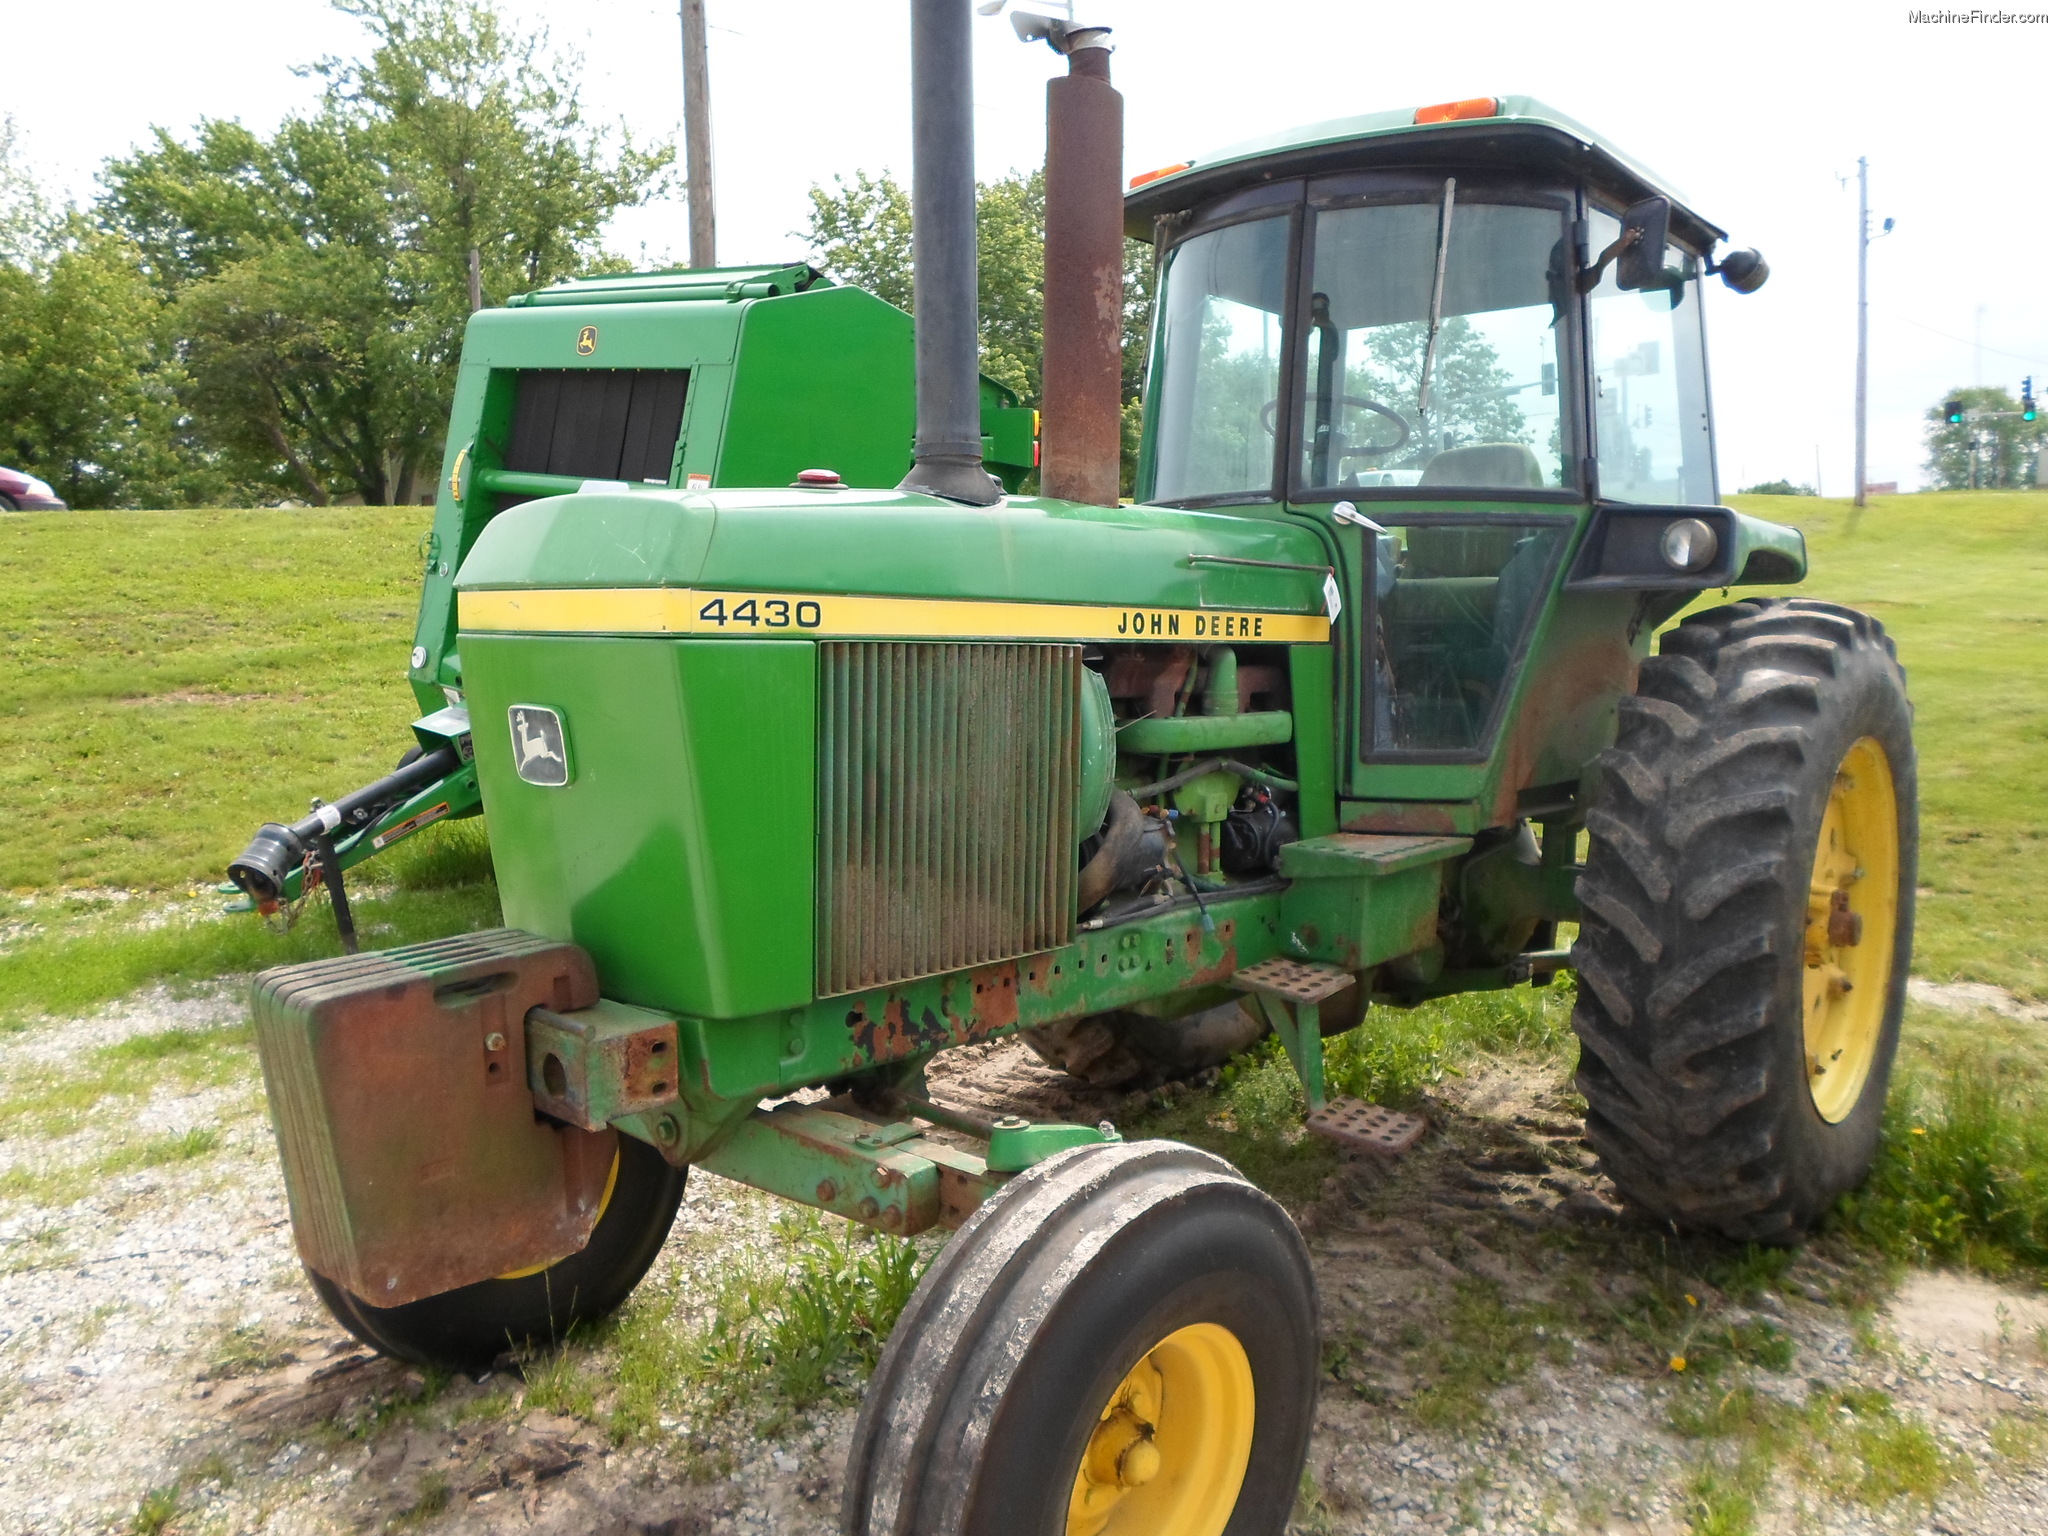 1976 John Deere 4430 Tractors Row Crop 100hp John Deere Machinefinder 6359